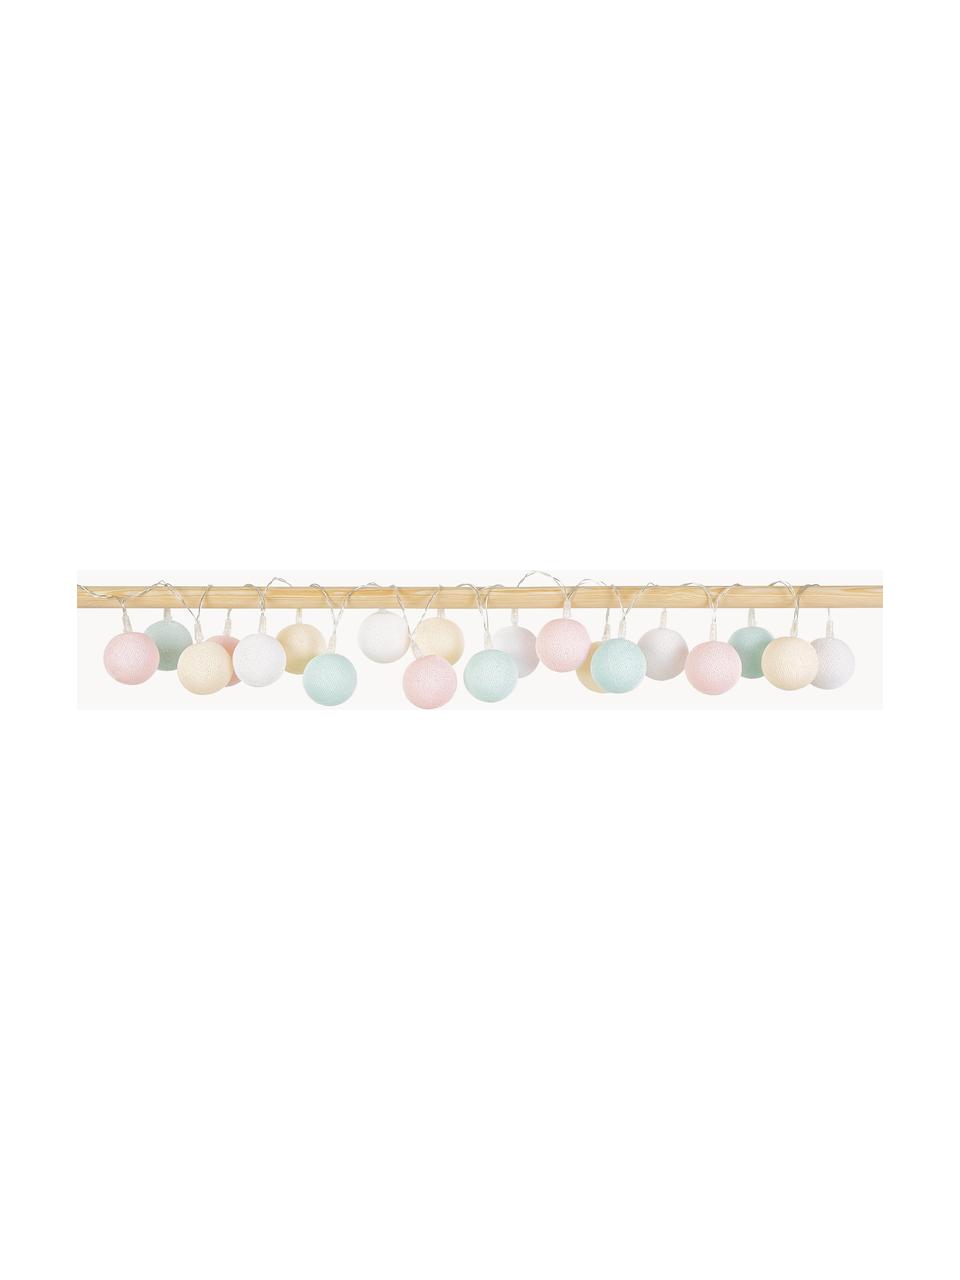 Girlanda świetlna LED Colorain, Biały, kremowy, pudrowy różowy, jasny niebieski, D 378 cm